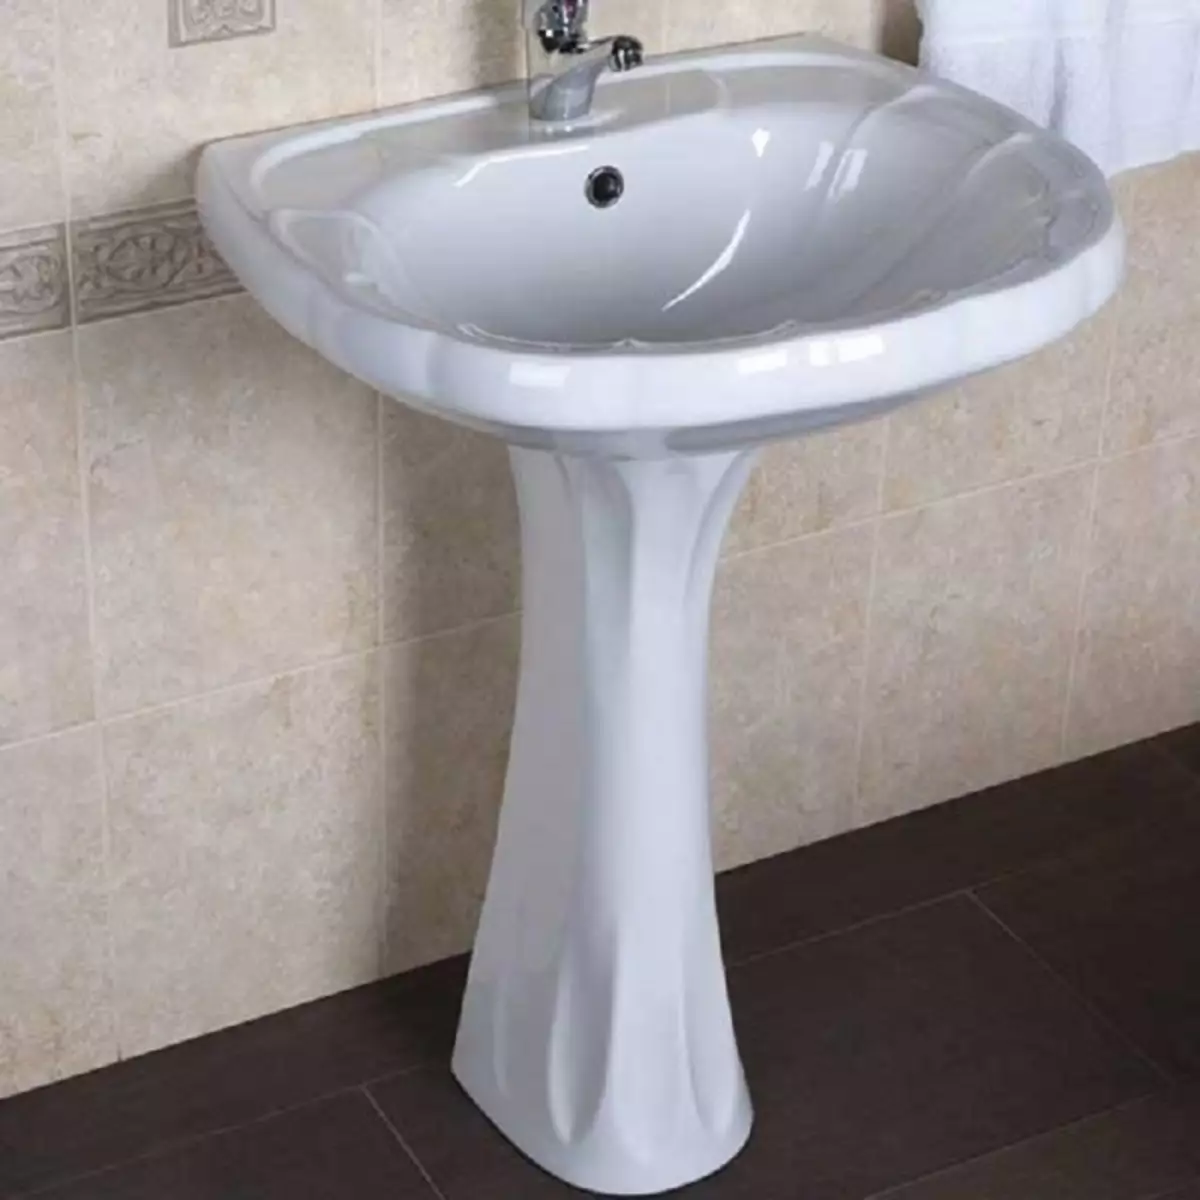 ارتفاع دستشویی در حمام از کف: استانداردها